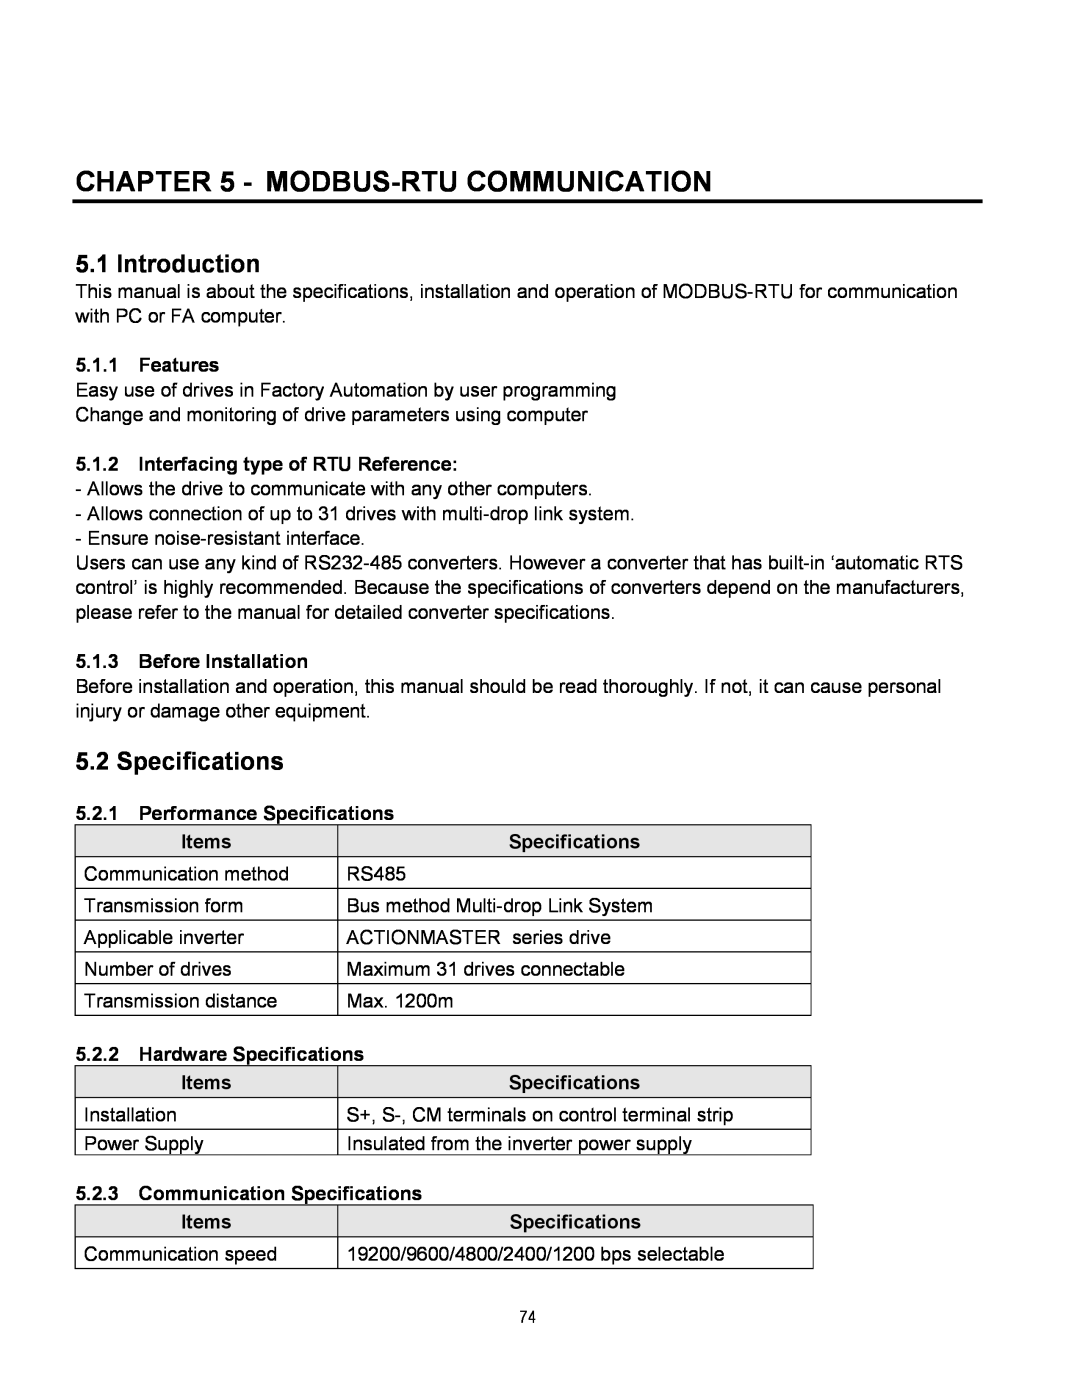 Cleveland Range inverter manual Modbus-Rtucommunication, Introduction, Specifications 